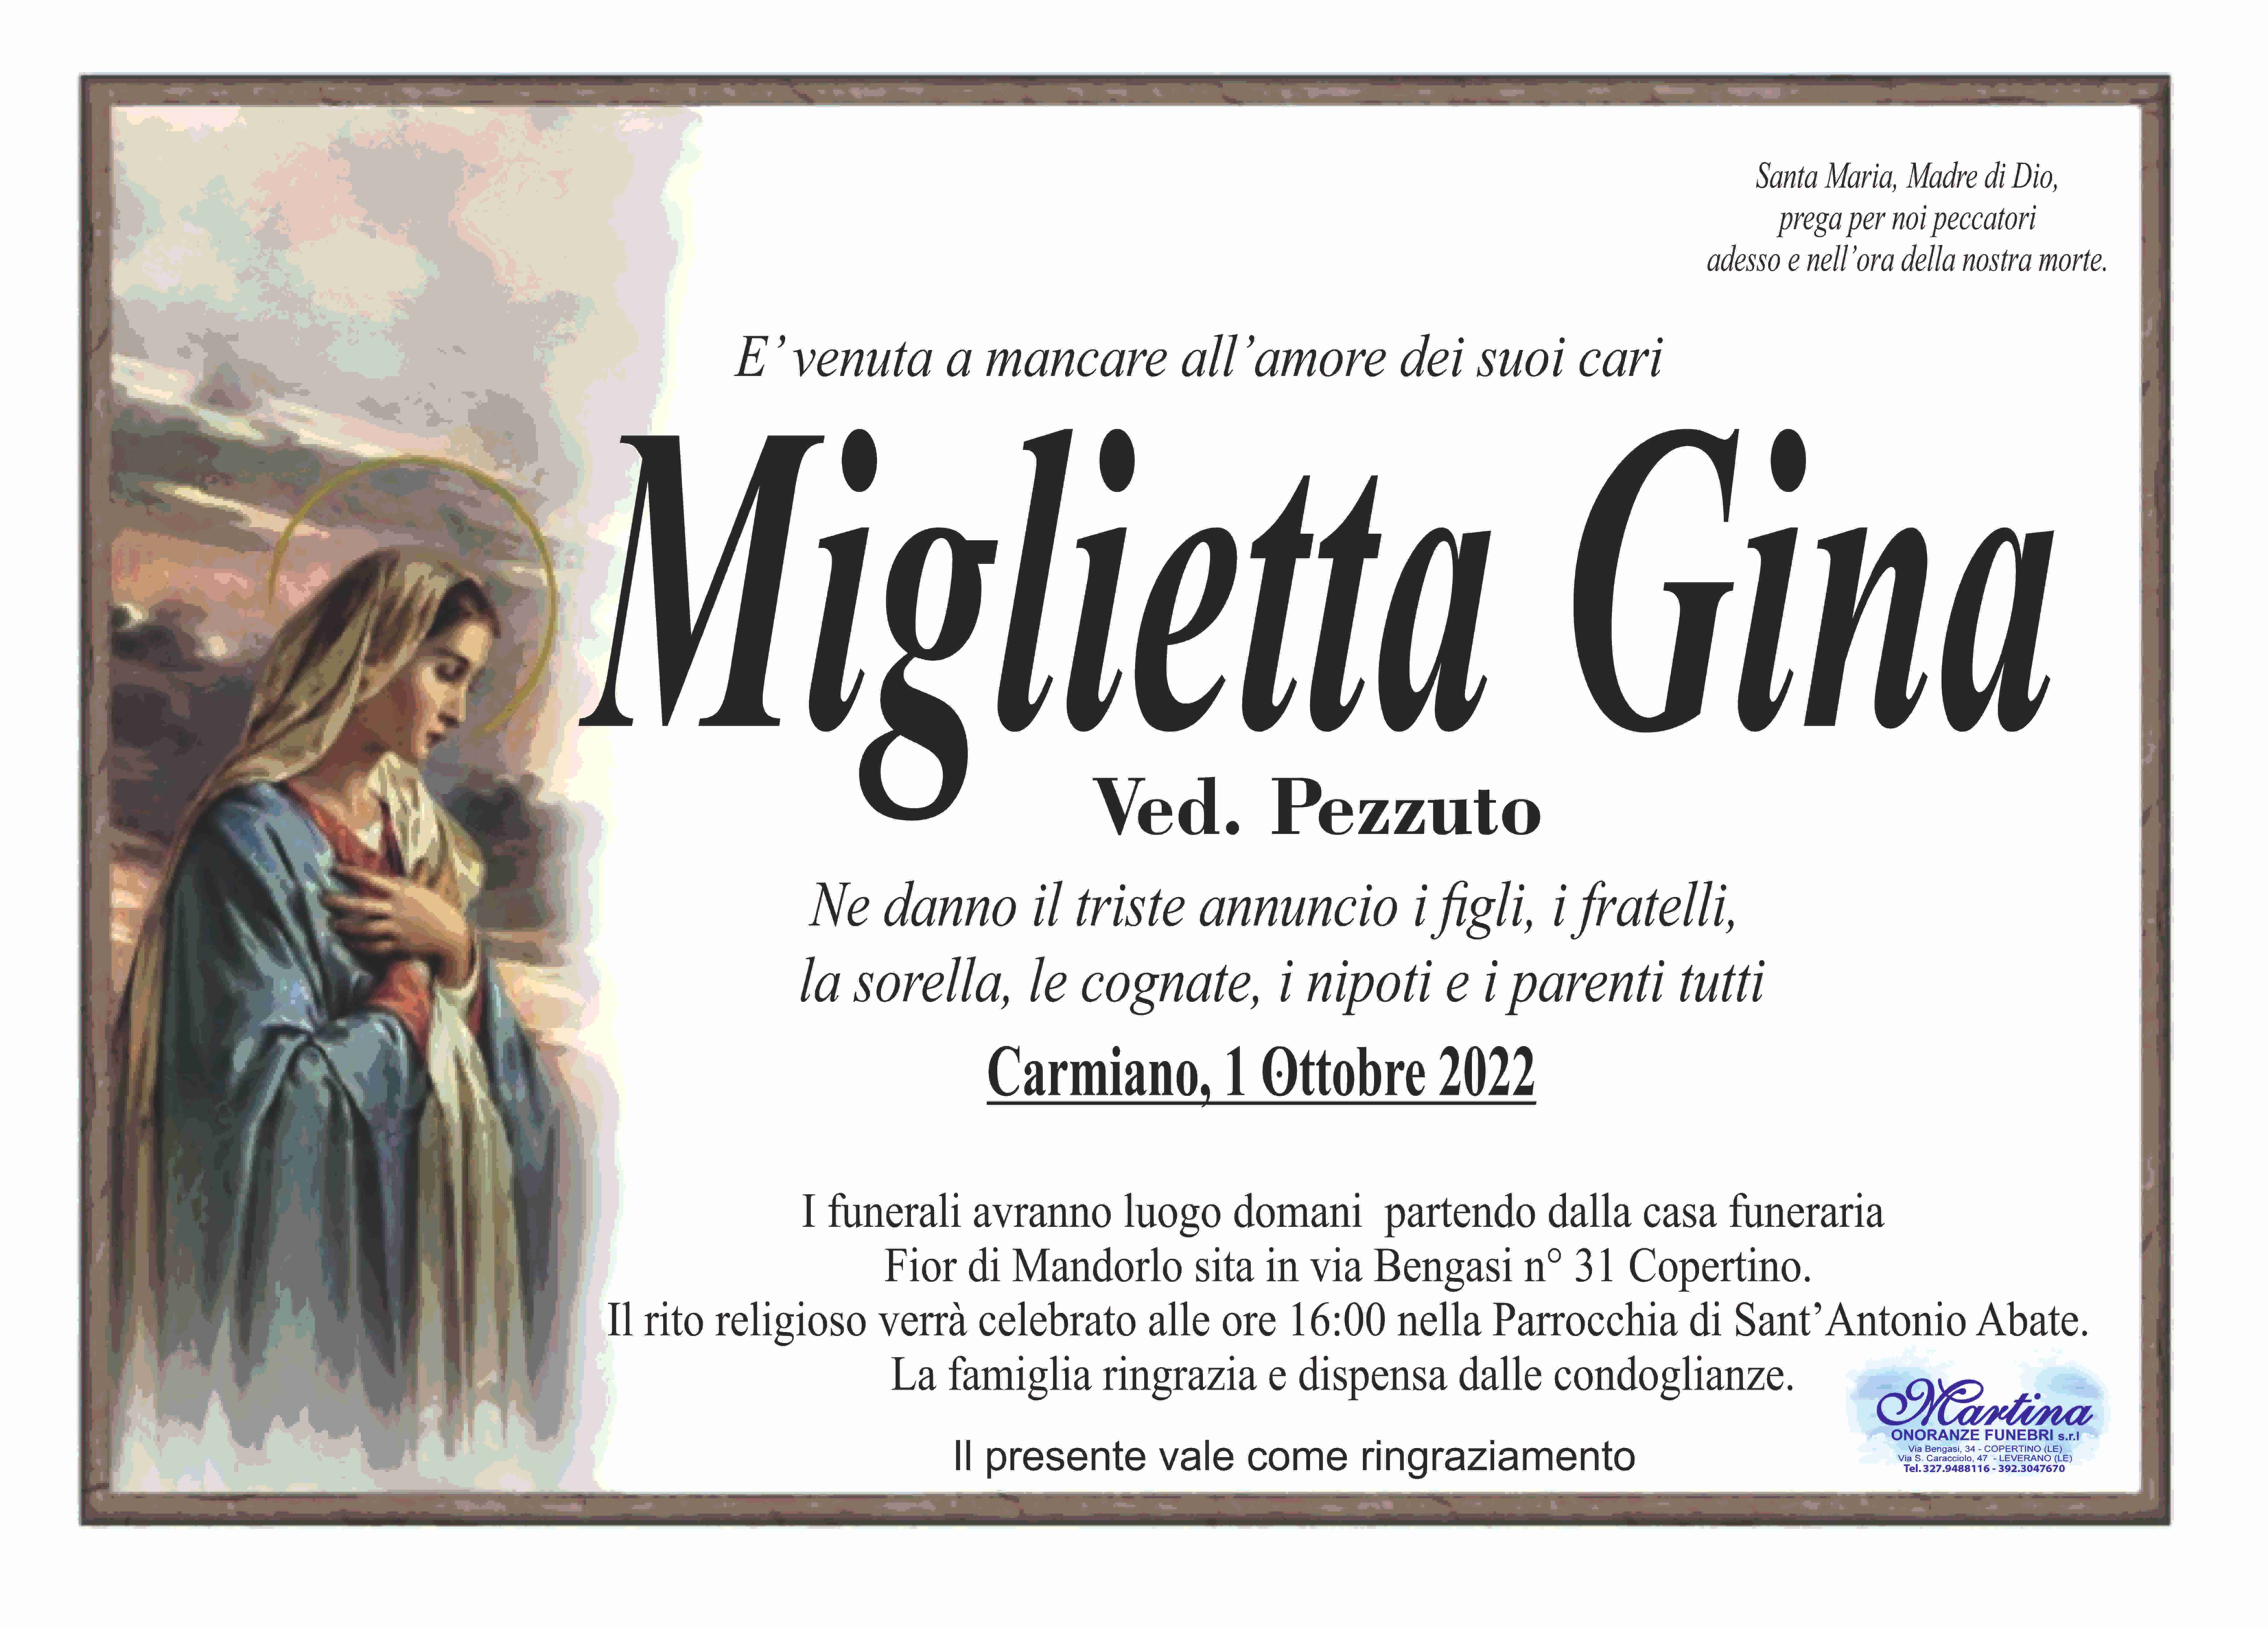 Gina Miglietta